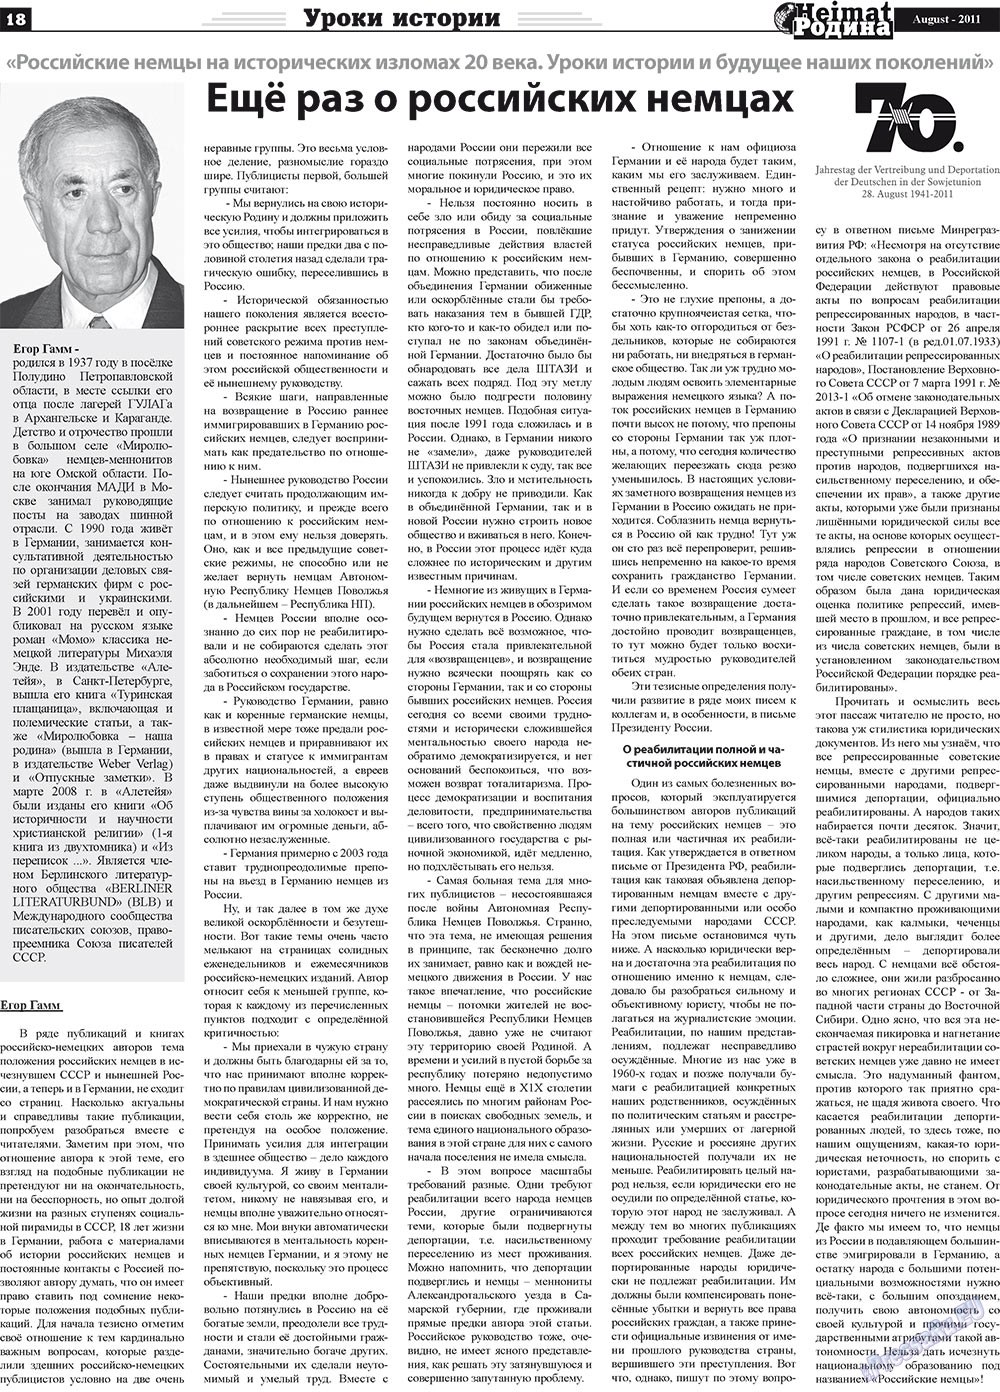 Heimat-Родина (газета). 2011 год, номер 8, стр. 18